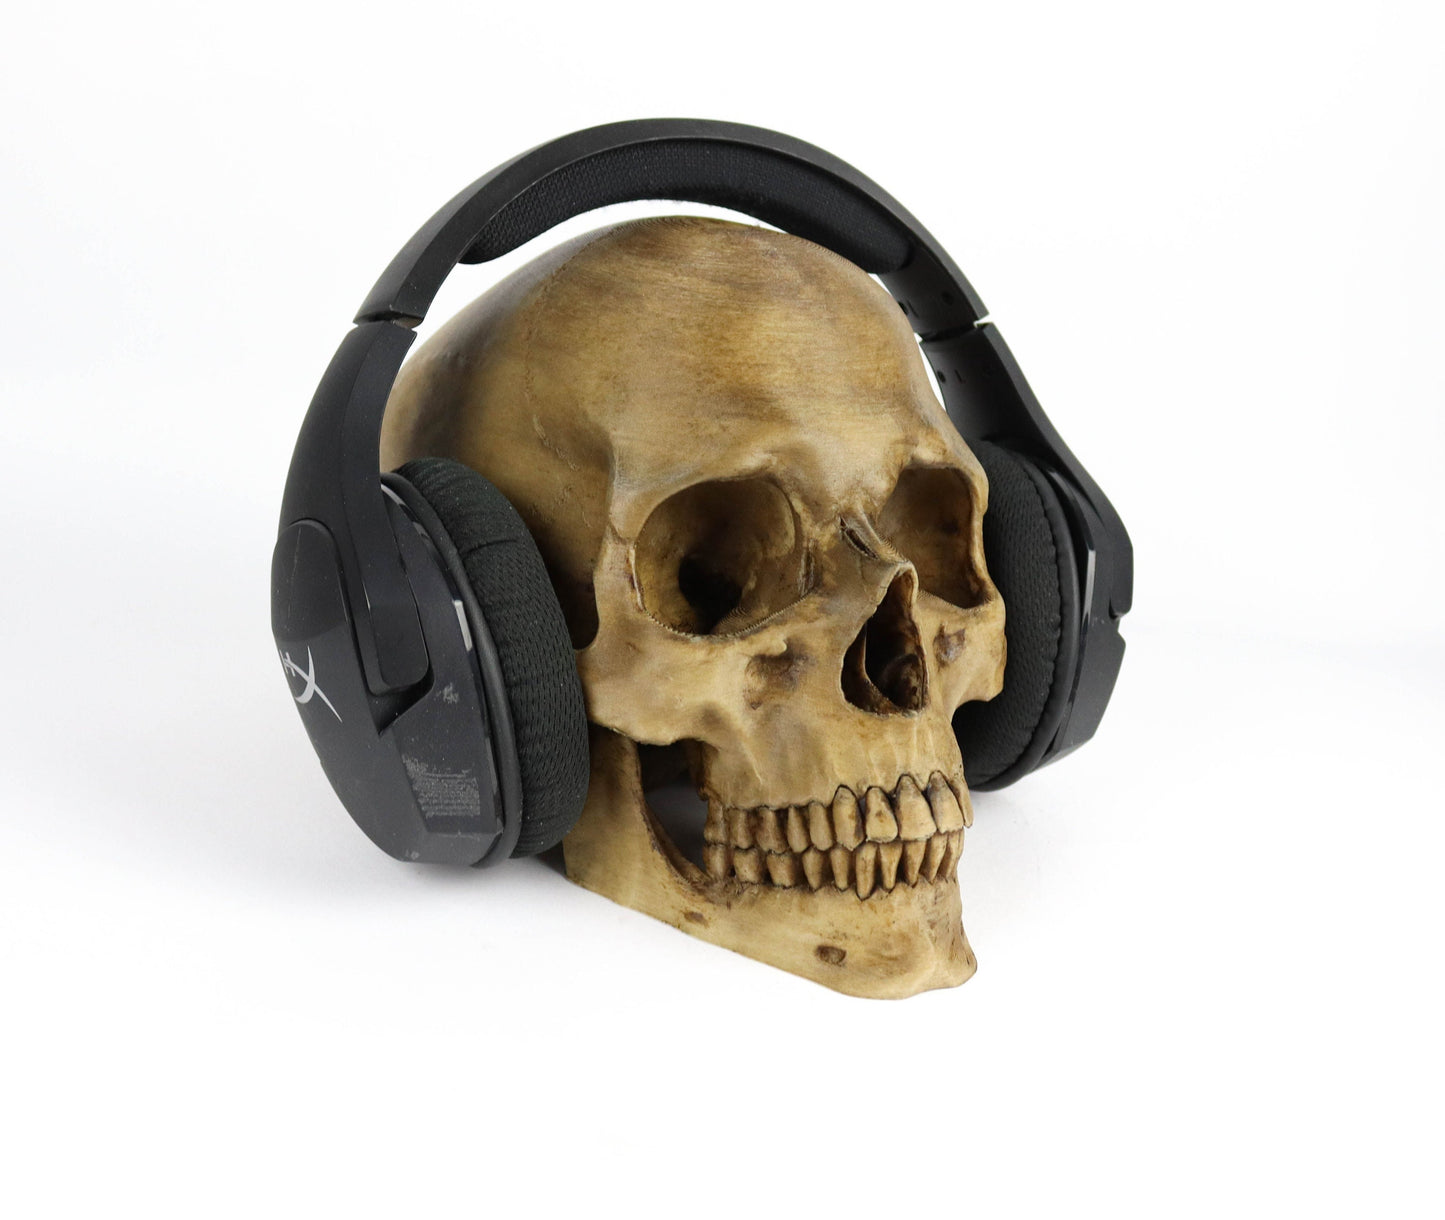 Aged Human Skull Headphone Holder, Skull Horror Decor Headphone stand